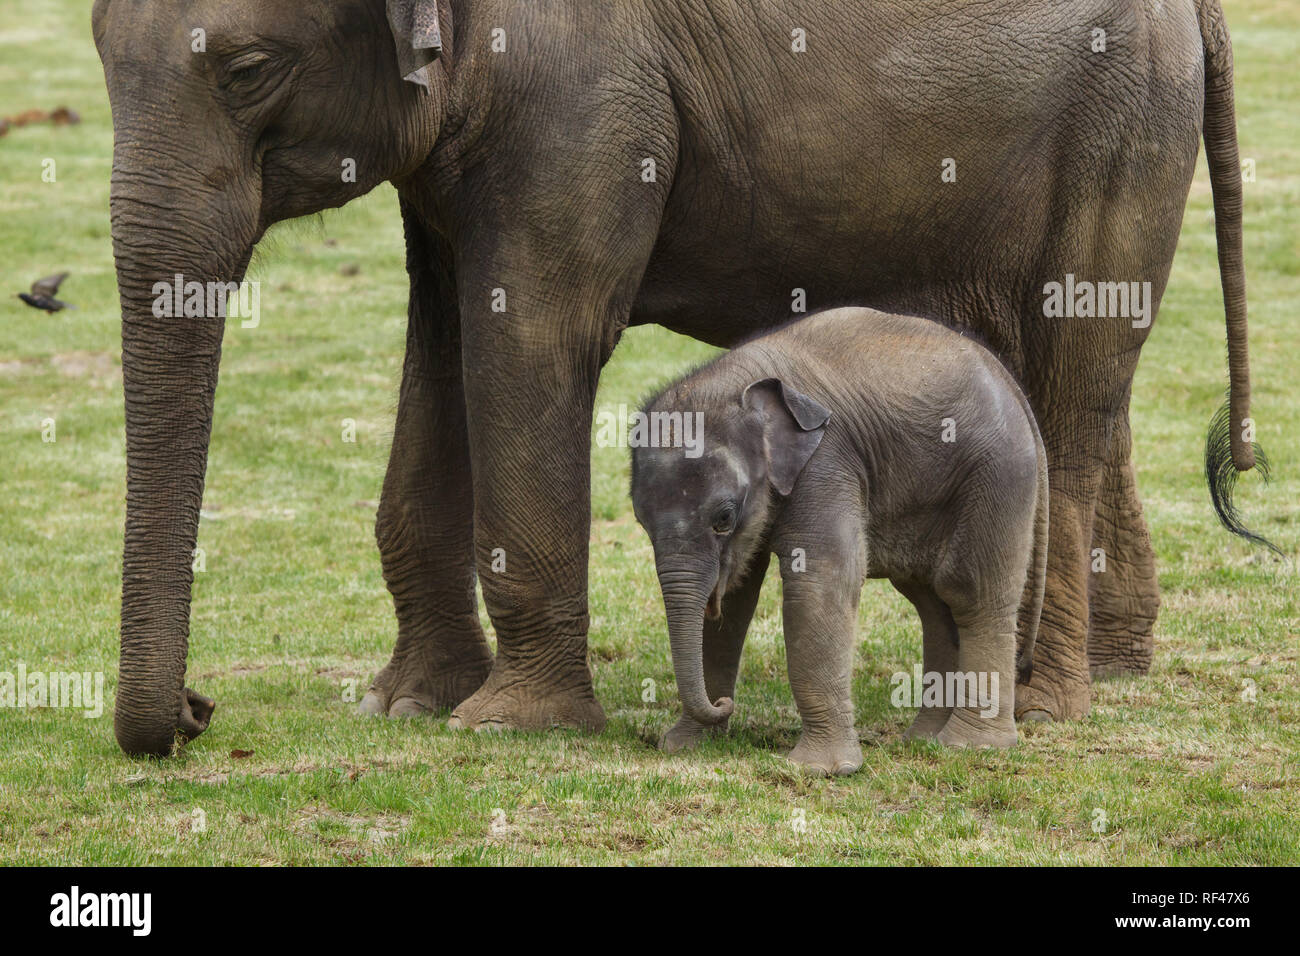 Uno mese-vecchio elefante indiano (Elephas maximus indicus) denominata Maxmilian con sua madre Janita presso lo Zoo di Praga, Repubblica Ceca. La Baby Elephant è nato il 5 aprile 2016, l'elefante Janita femmina come il primo baby elephant non solo la data di nascita ma anche concepito presso lo Zoo di Praga. Foto Stock